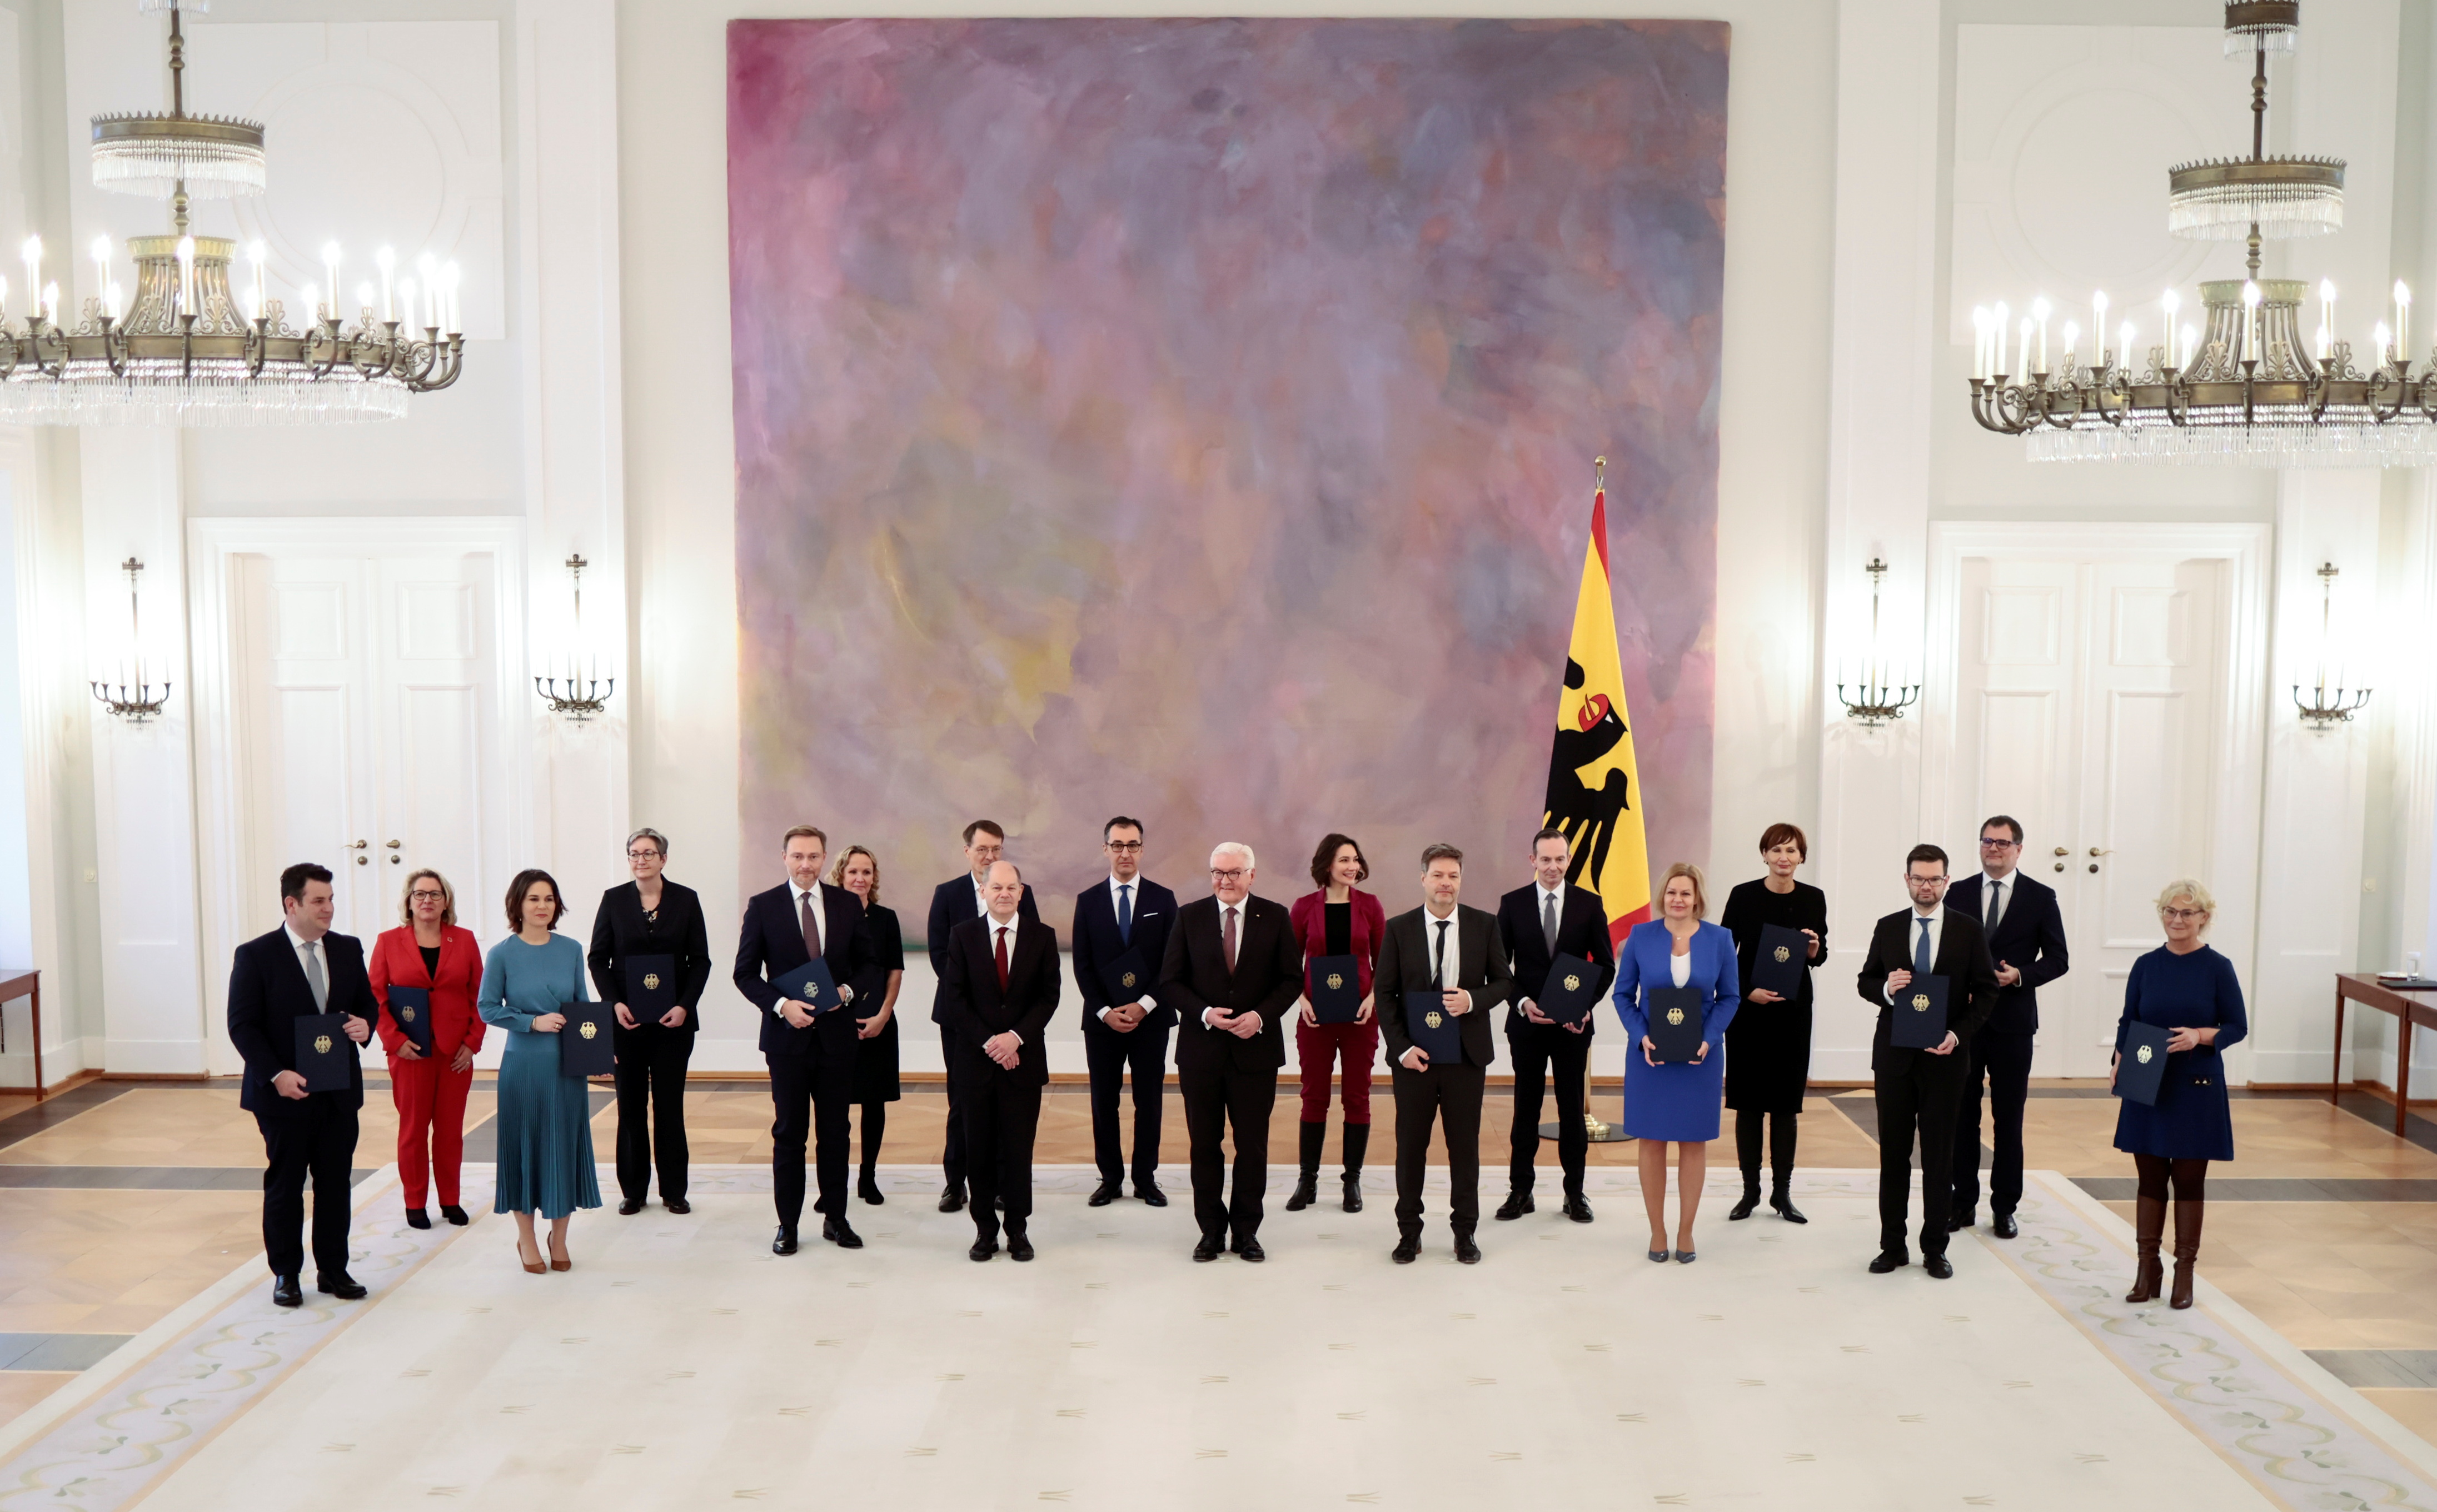 Olaf Scholz junto al presidente alemán Frank-Walter Steinmeier y a los ministros del nuevo gobierno (REUTERS/Hannibal Hanschke)